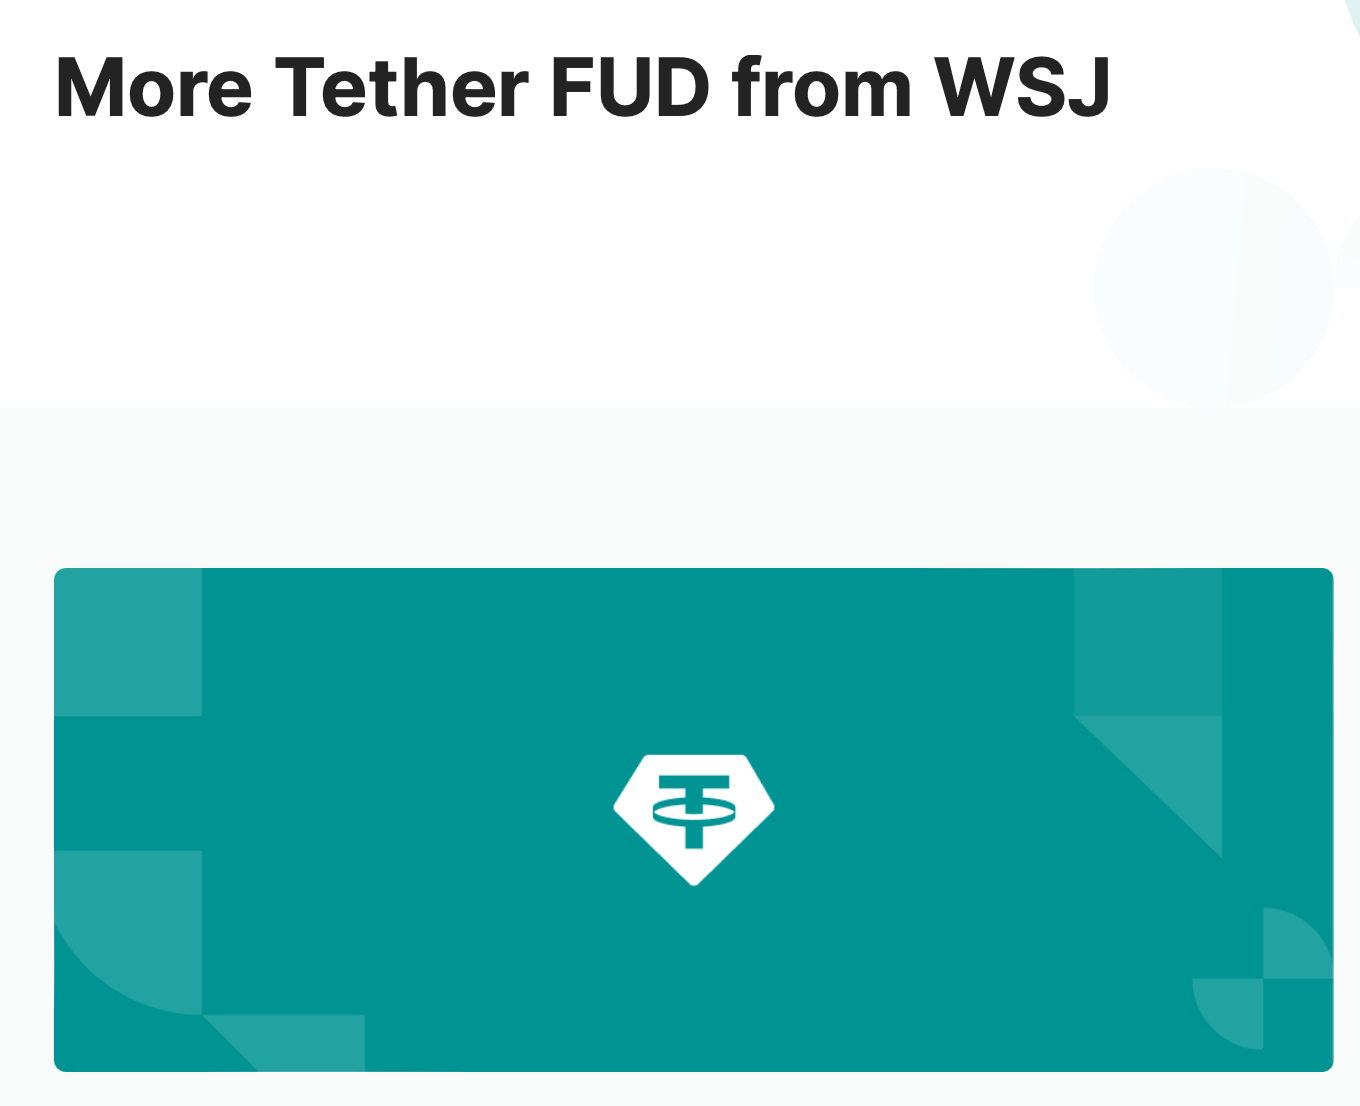 Что происходит с компанией Tether? В Tether статью WSJ назвали ничем не подкреплённой попыткой обвалить крипторынок. Фото.